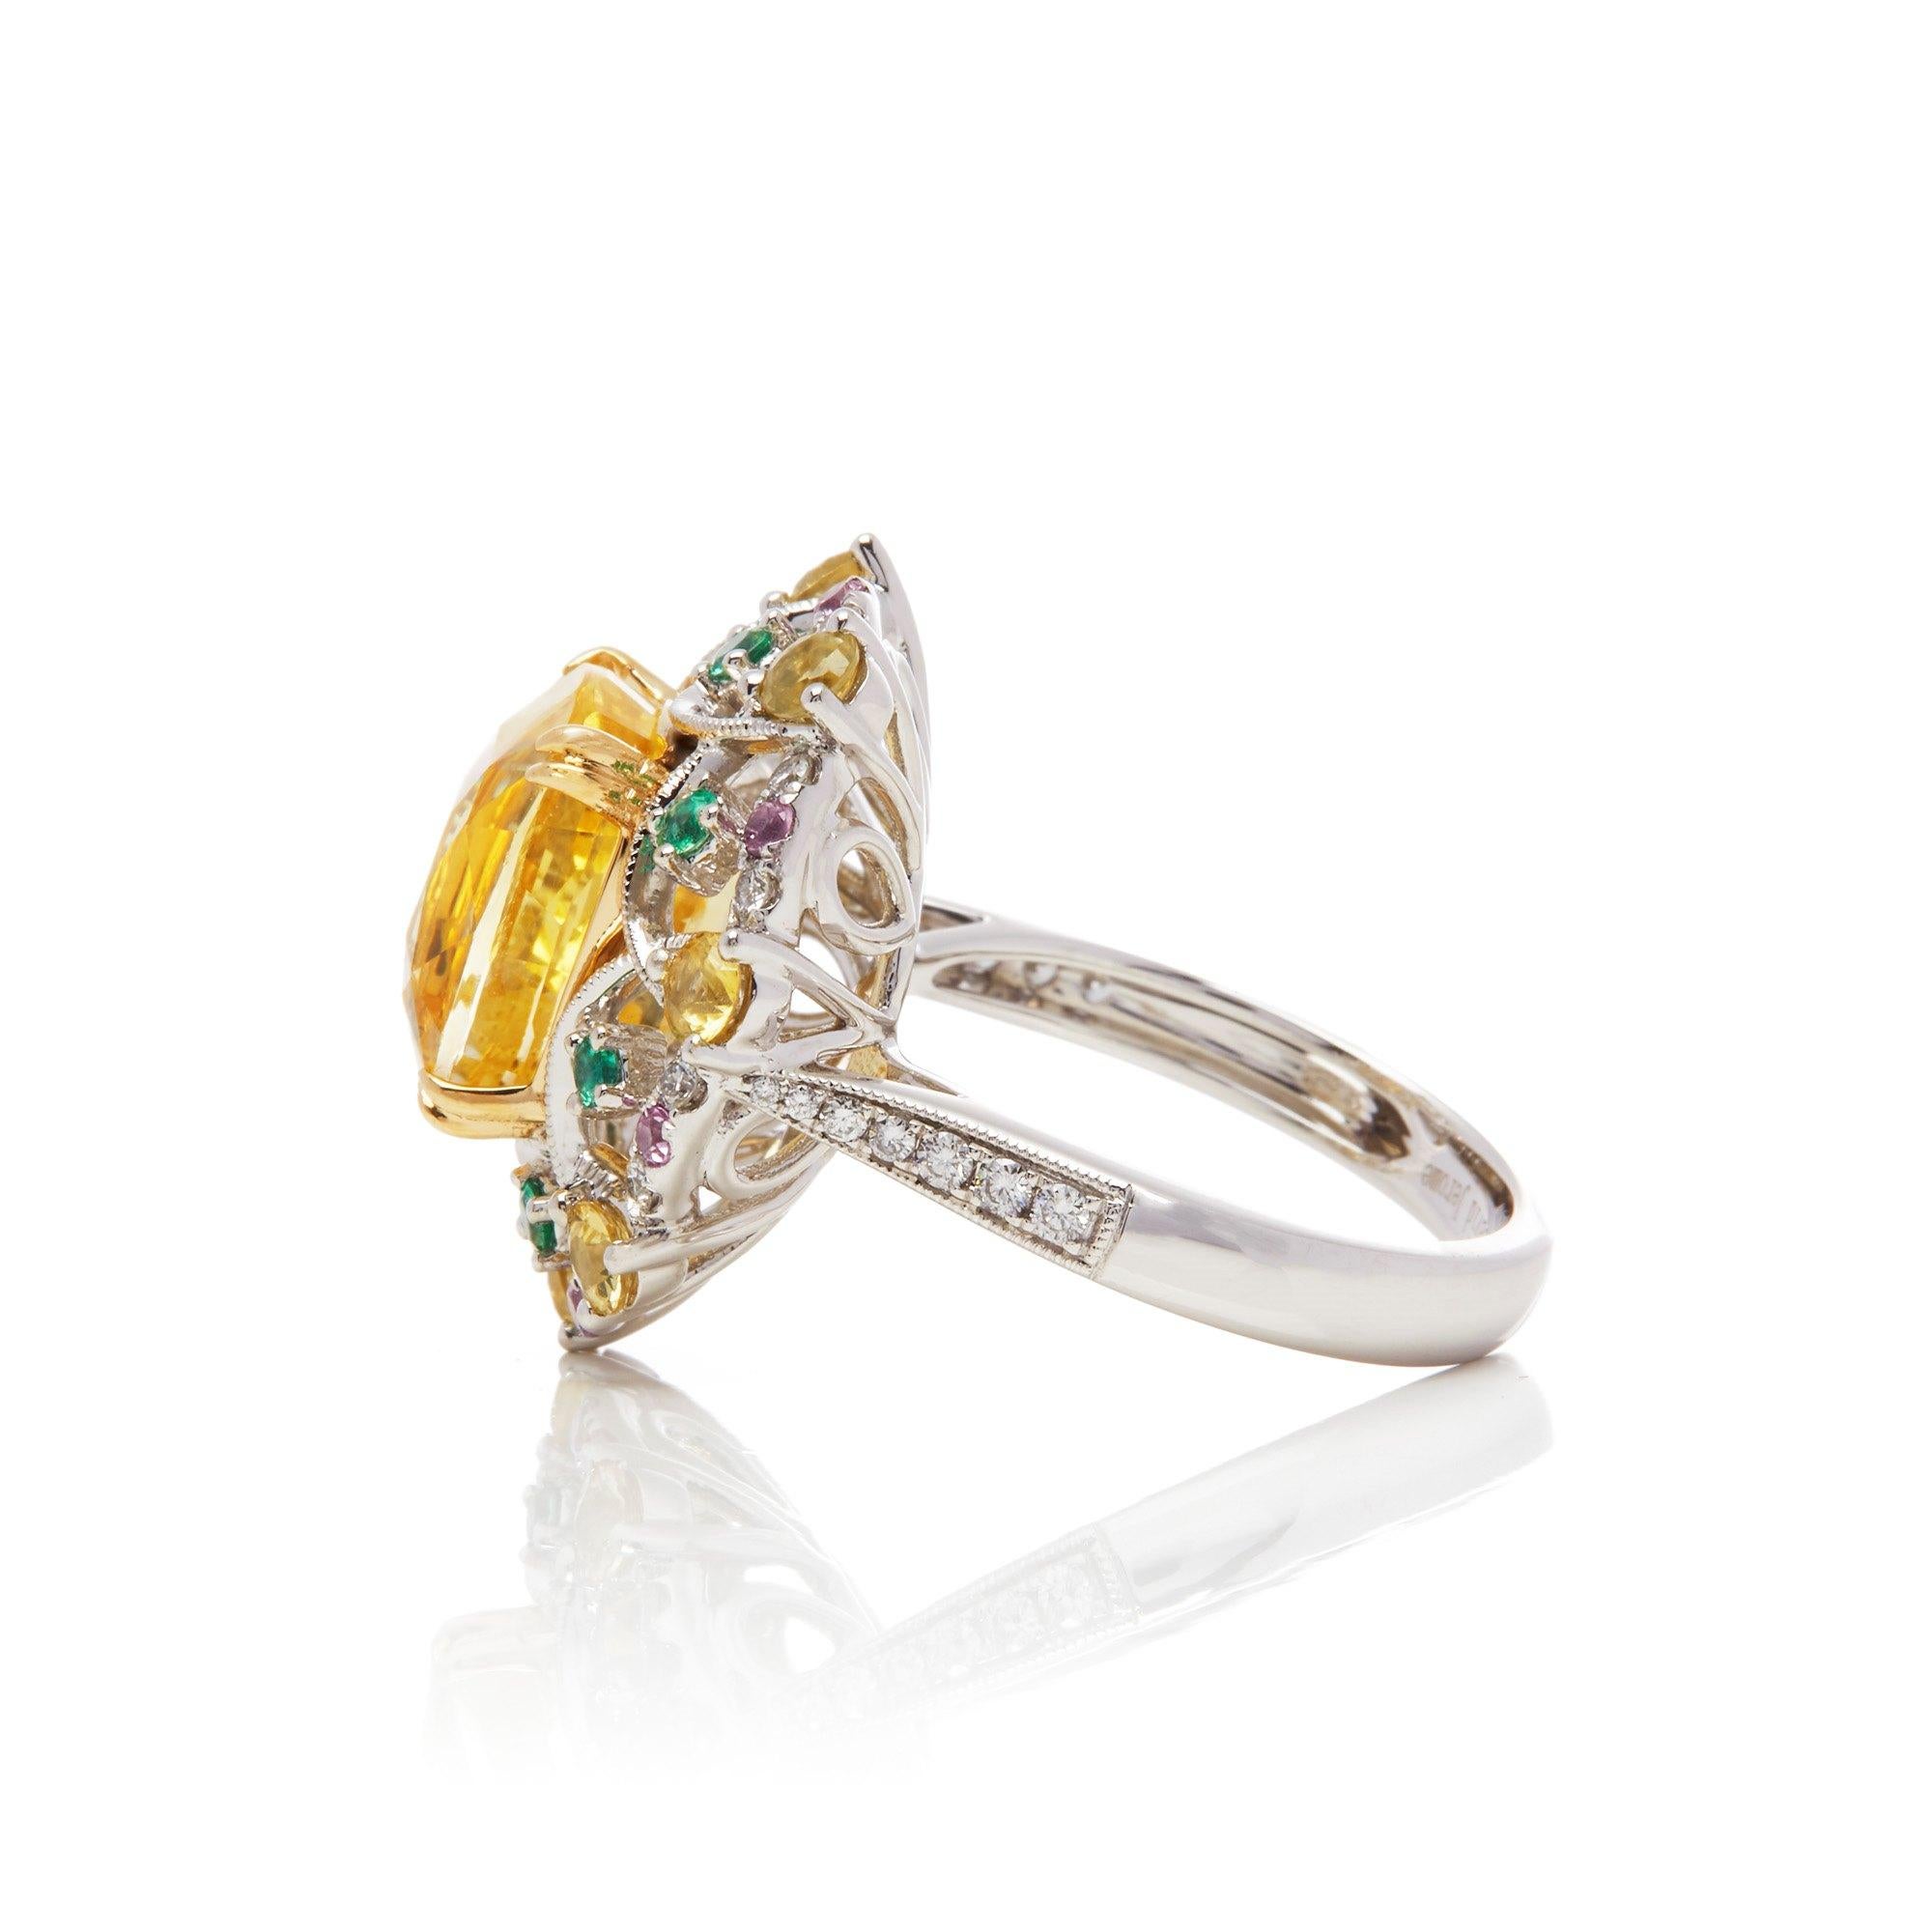 Dieser von David Jerome entworfene Ring stammt aus seiner Privatsammlung und enthält einen gelben Saphir im Kissenschliff mit einem Gesamtgewicht von 8,60 Karat, der in Sri Lanka gewonnen wurde. Besetzt mit einer Mischung aus runden Diamanten im